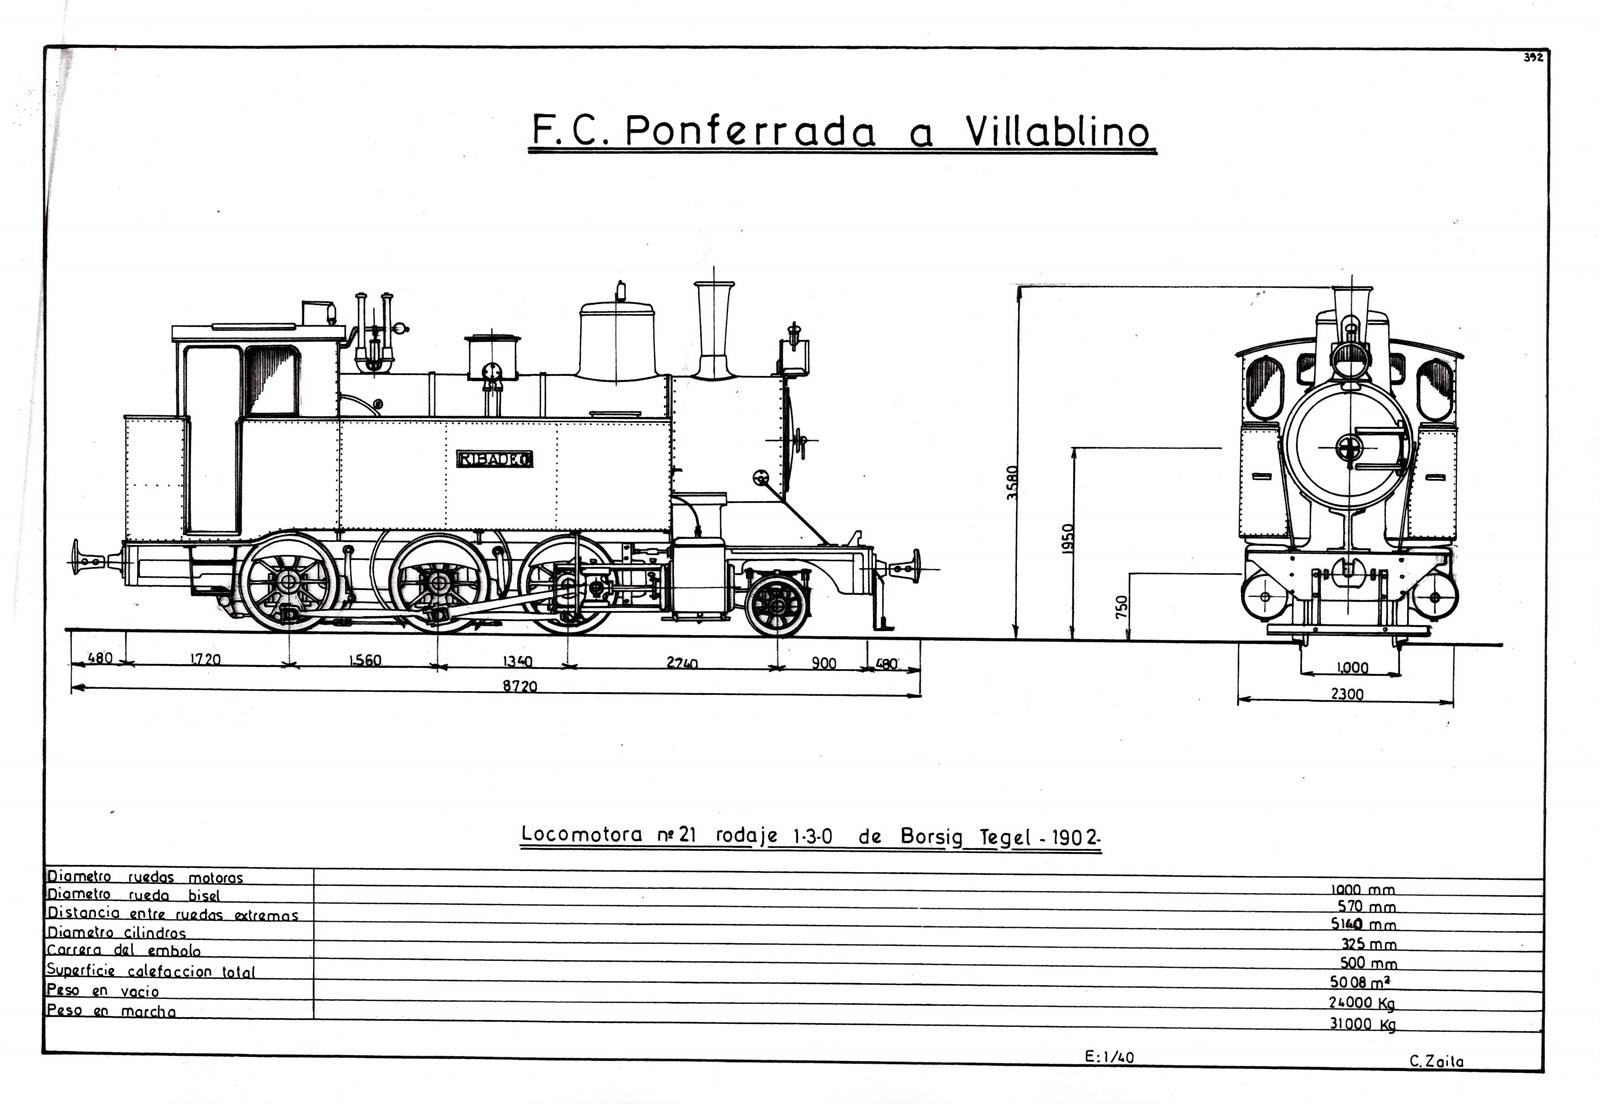 PV Locomotora 130 Borsig nº21 , dibujo Carmelo Zaita Rubio